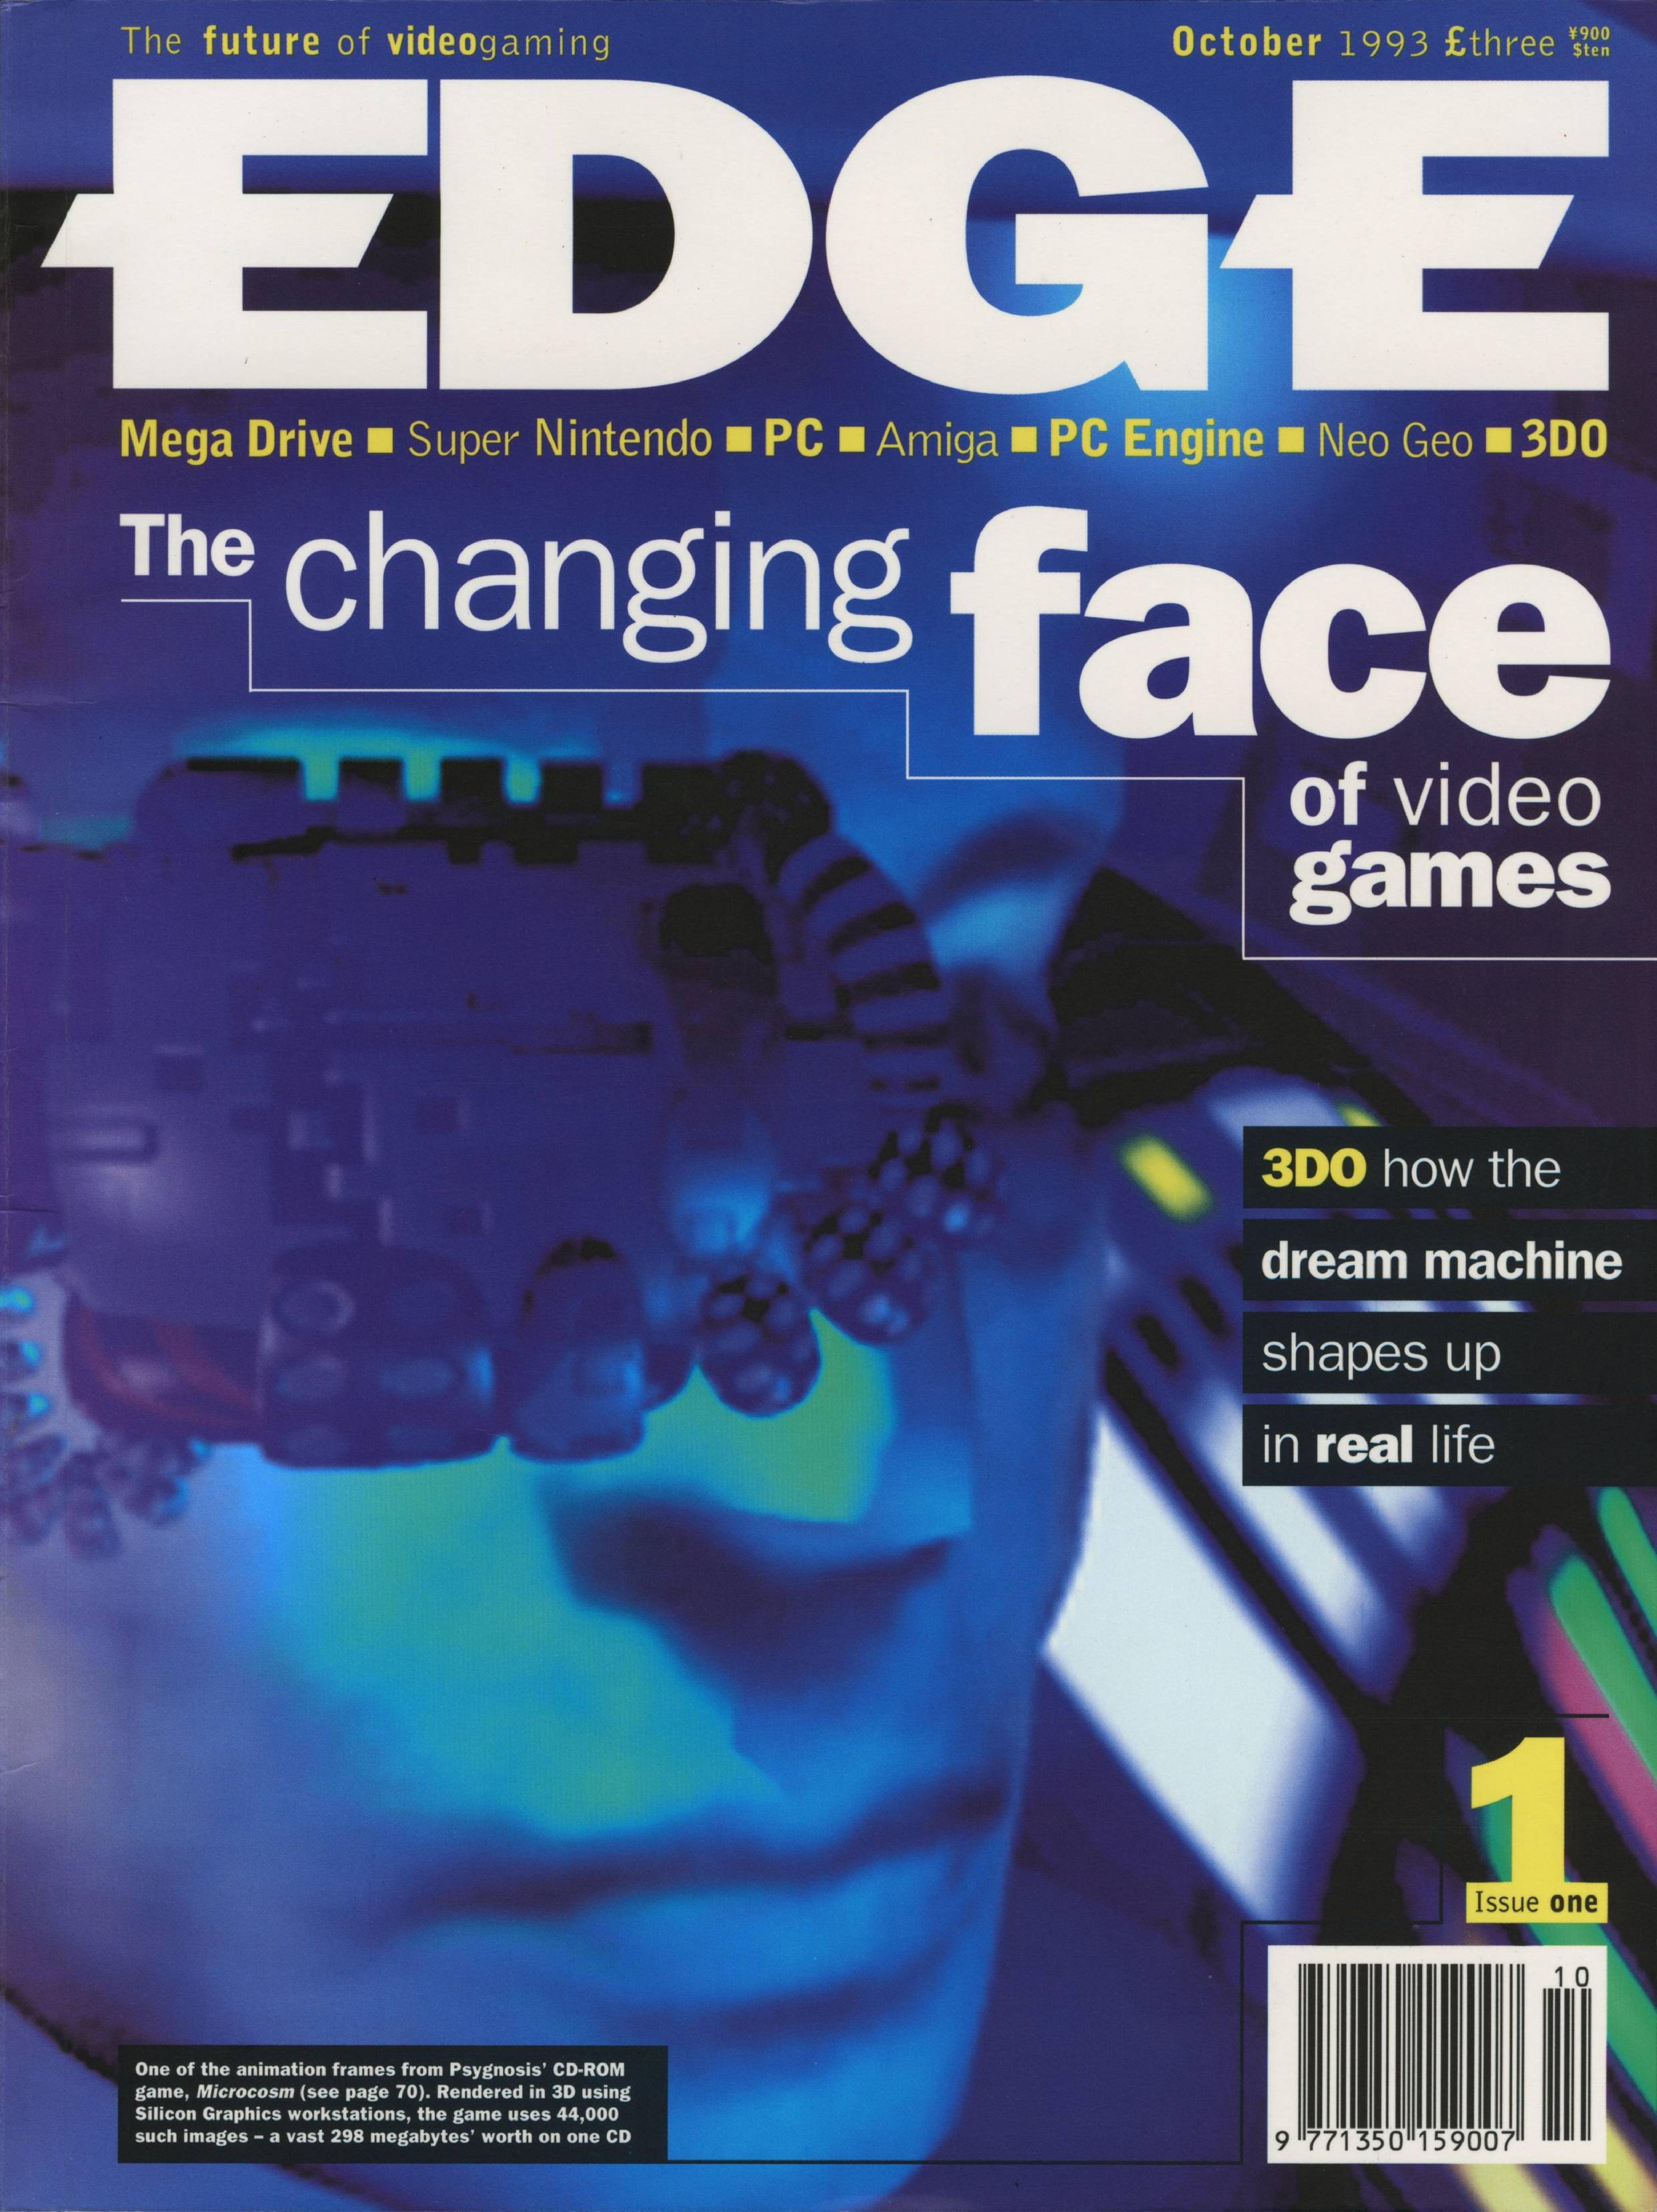 PlayStation Magazine - Edição 298 Back Issue